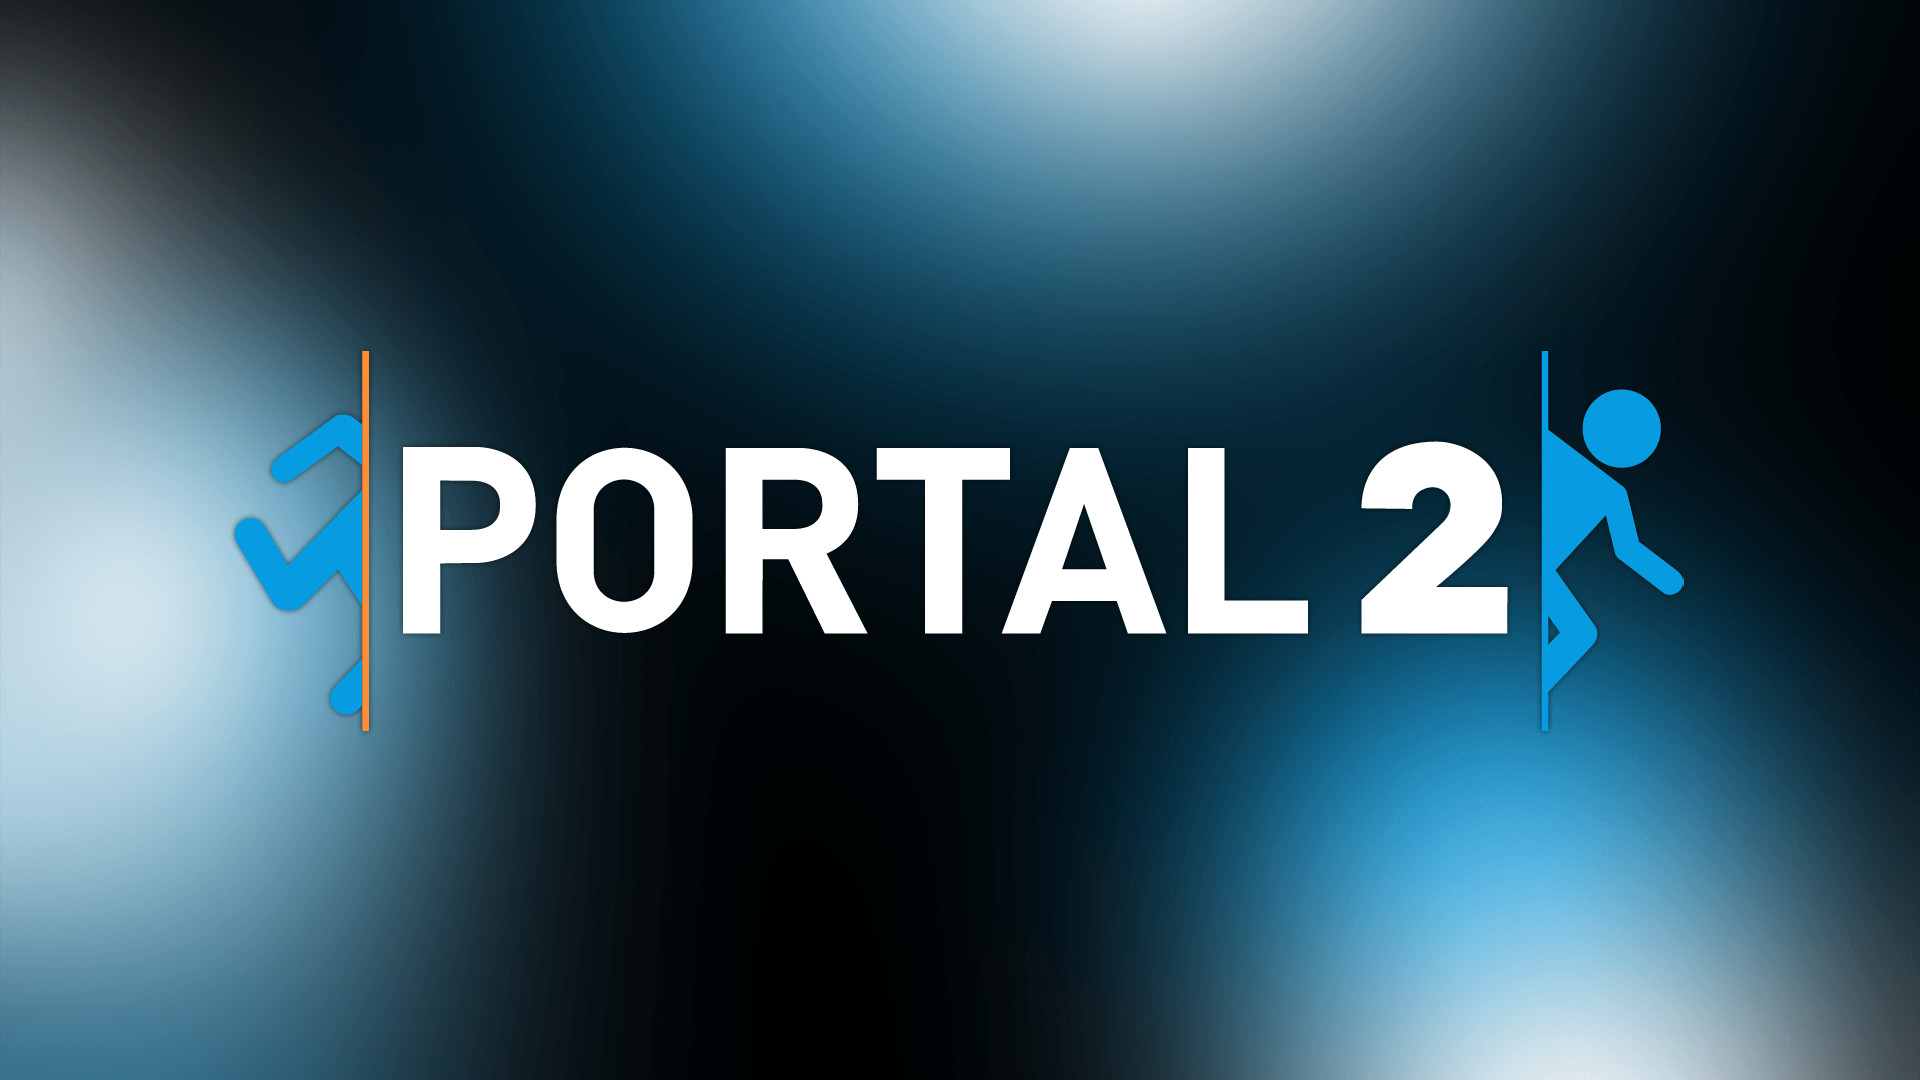 1920x1080 Portal 2 HD Wallpaper Â» FullHDWpp - Full HD Wallpapers 